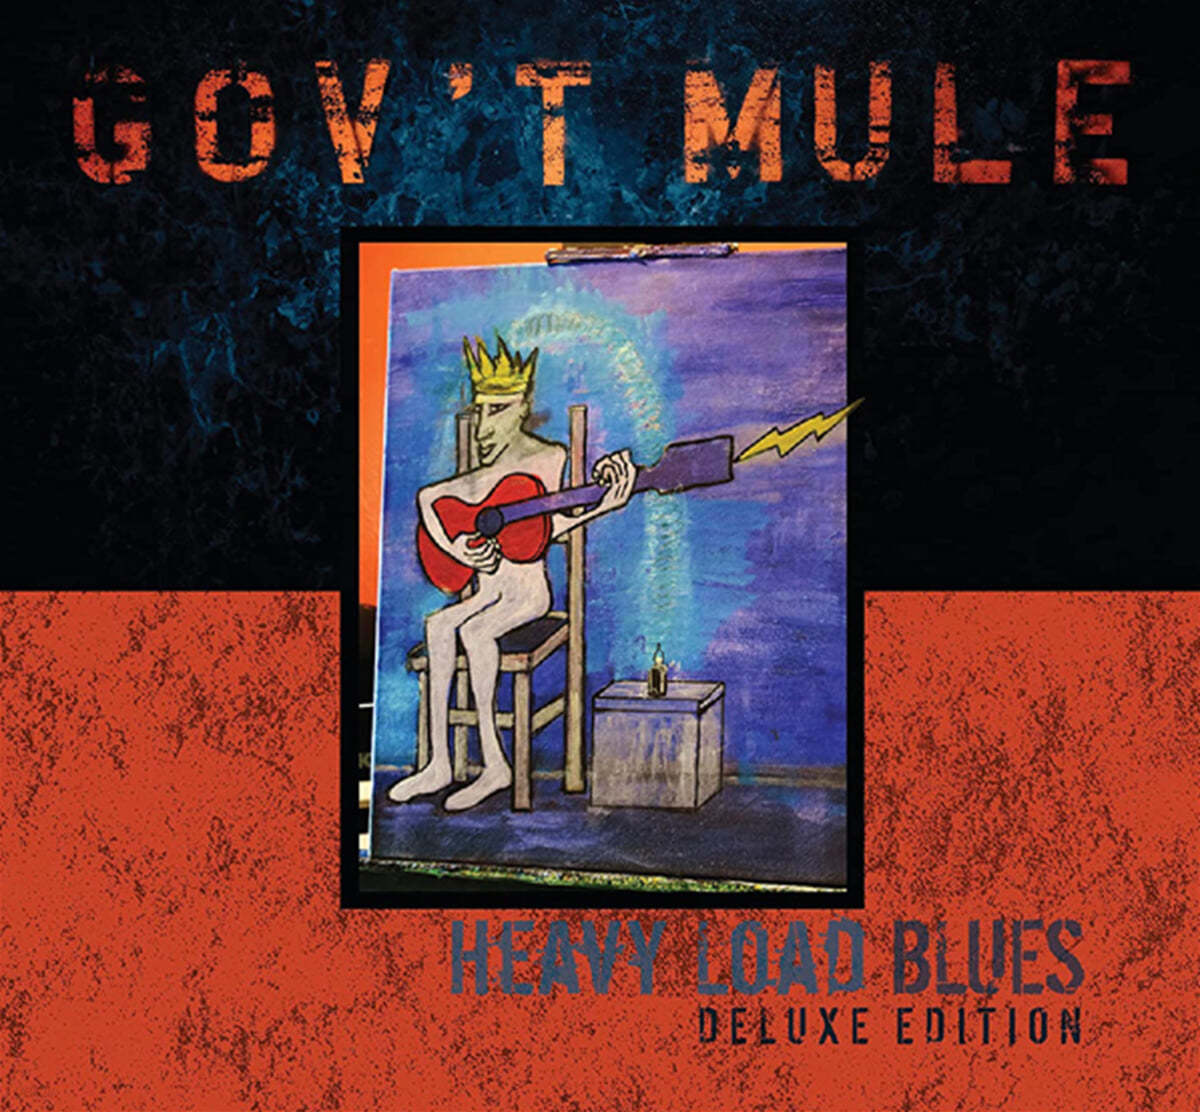 Gov't Mule (곱트 뮬) - Heavy Load Blues 